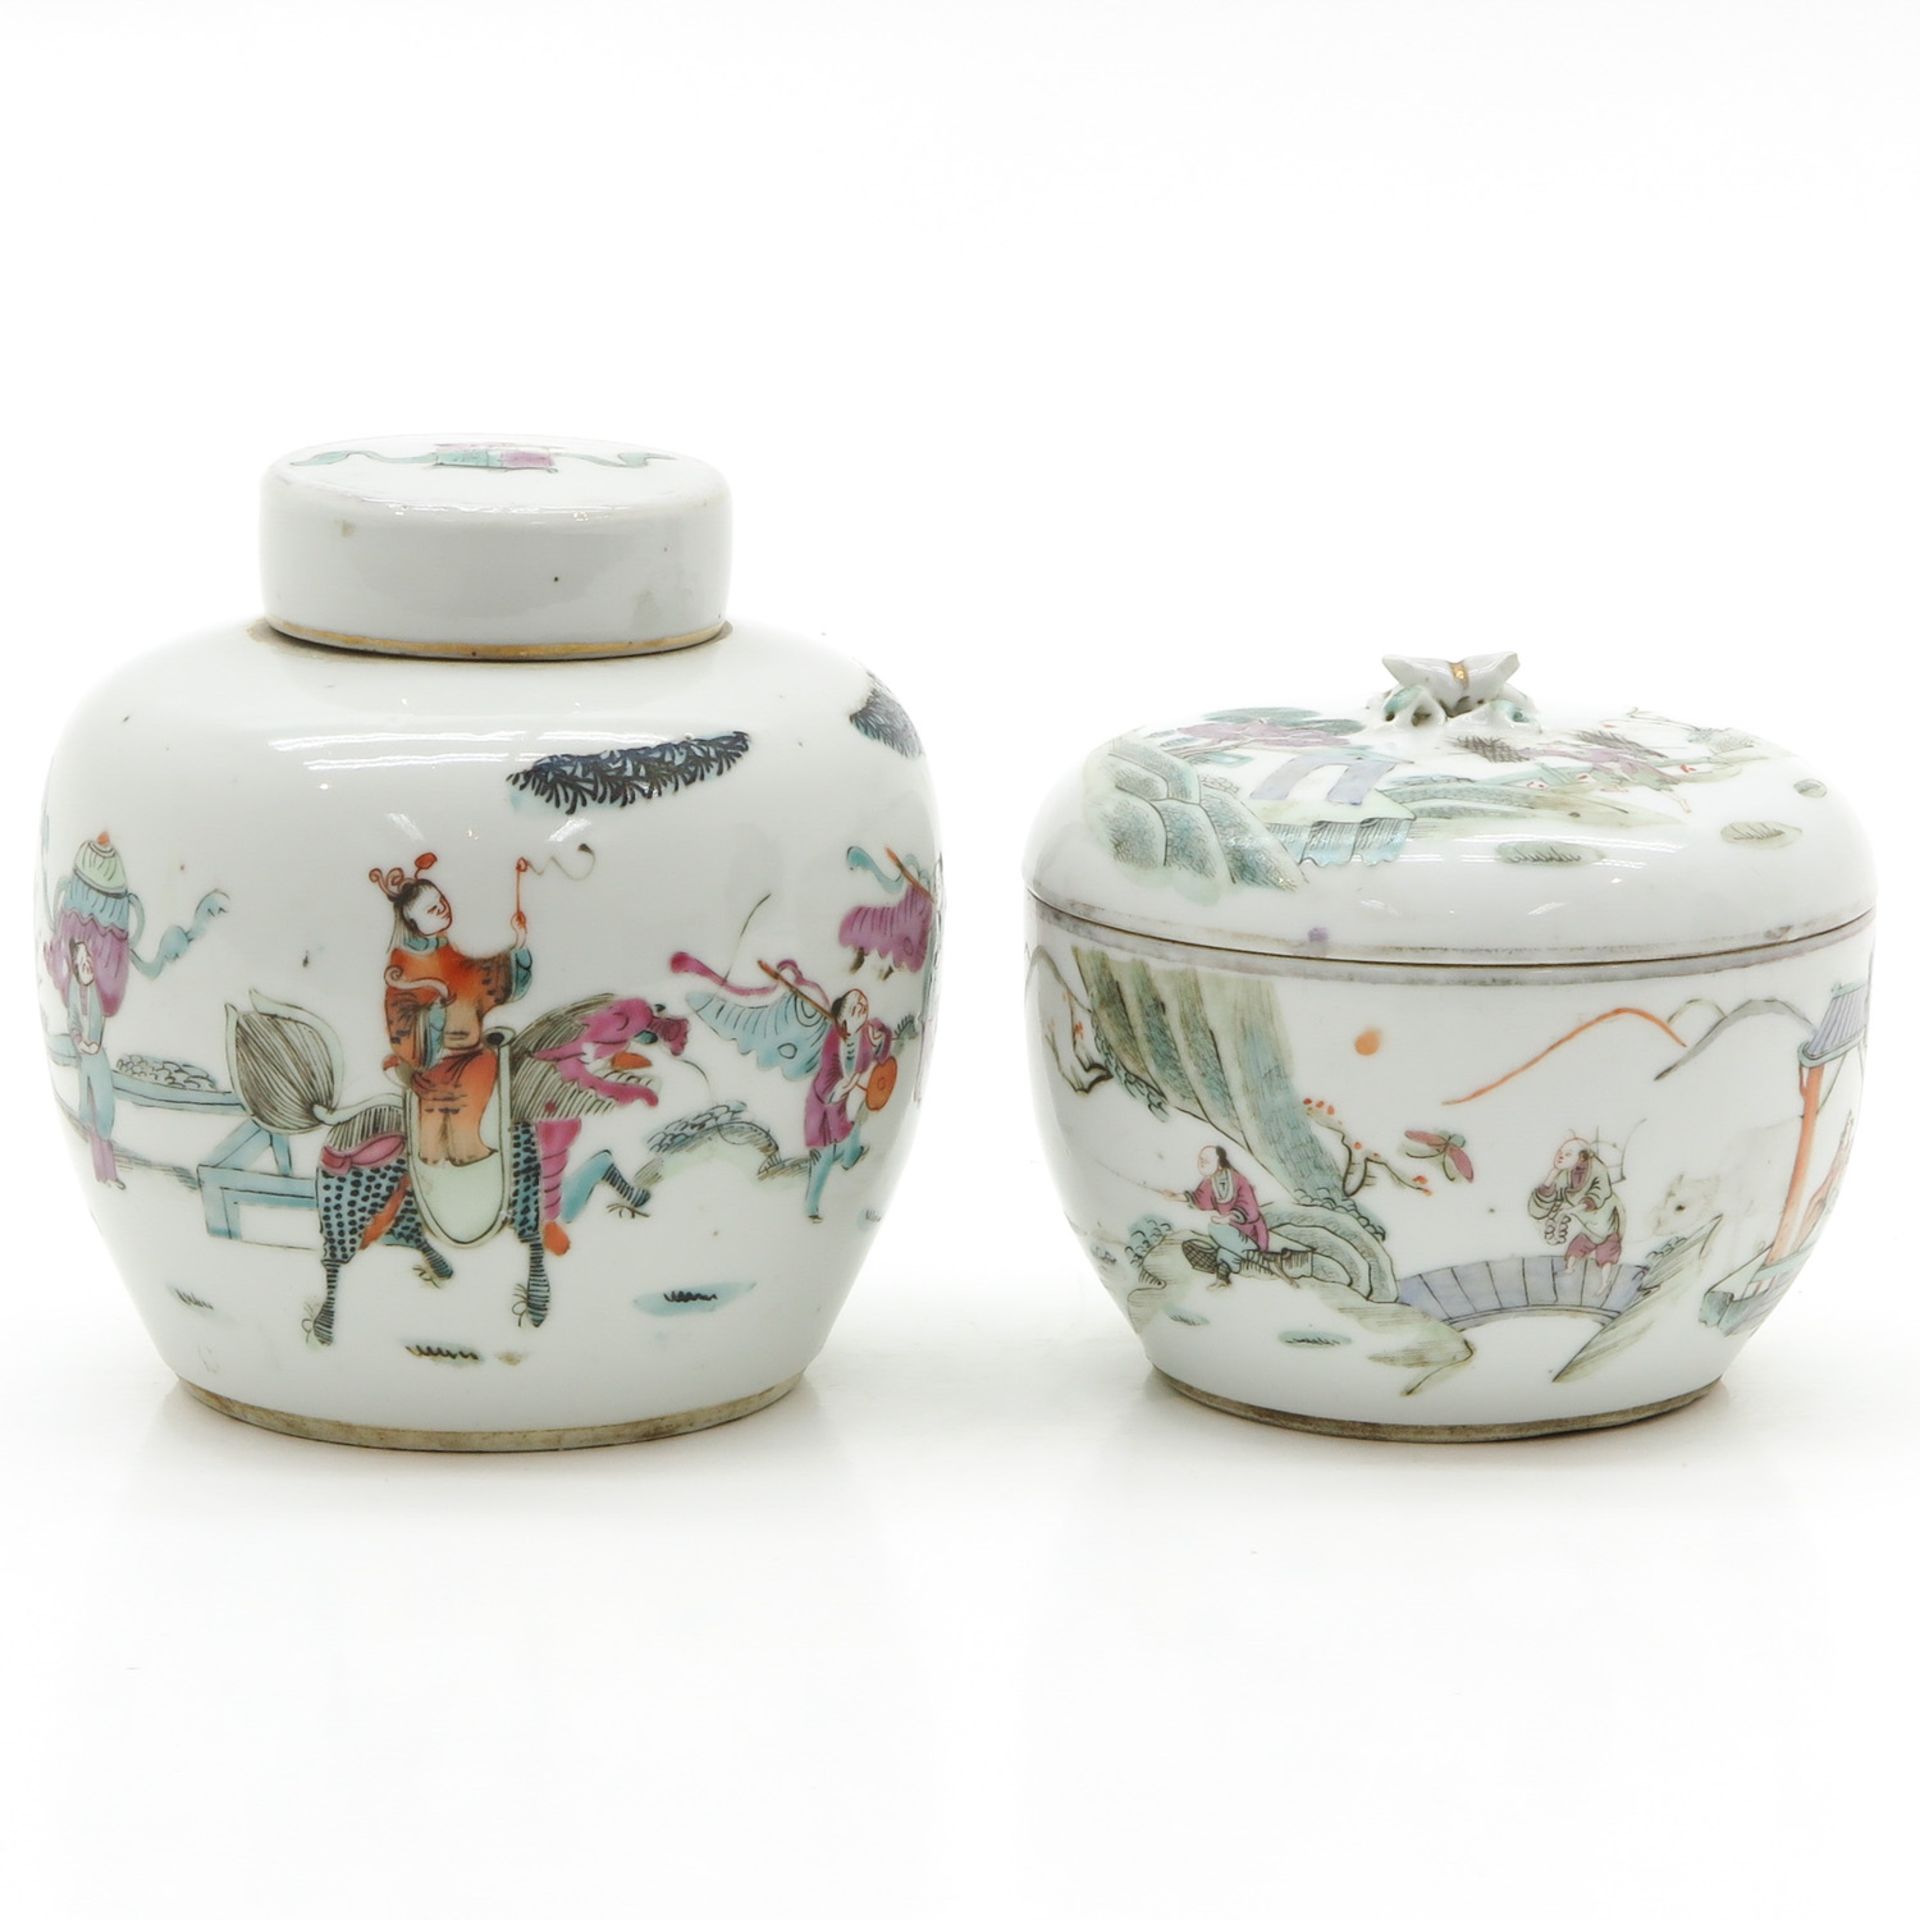 China Porcelain Lidded Jar and Ginger Jar